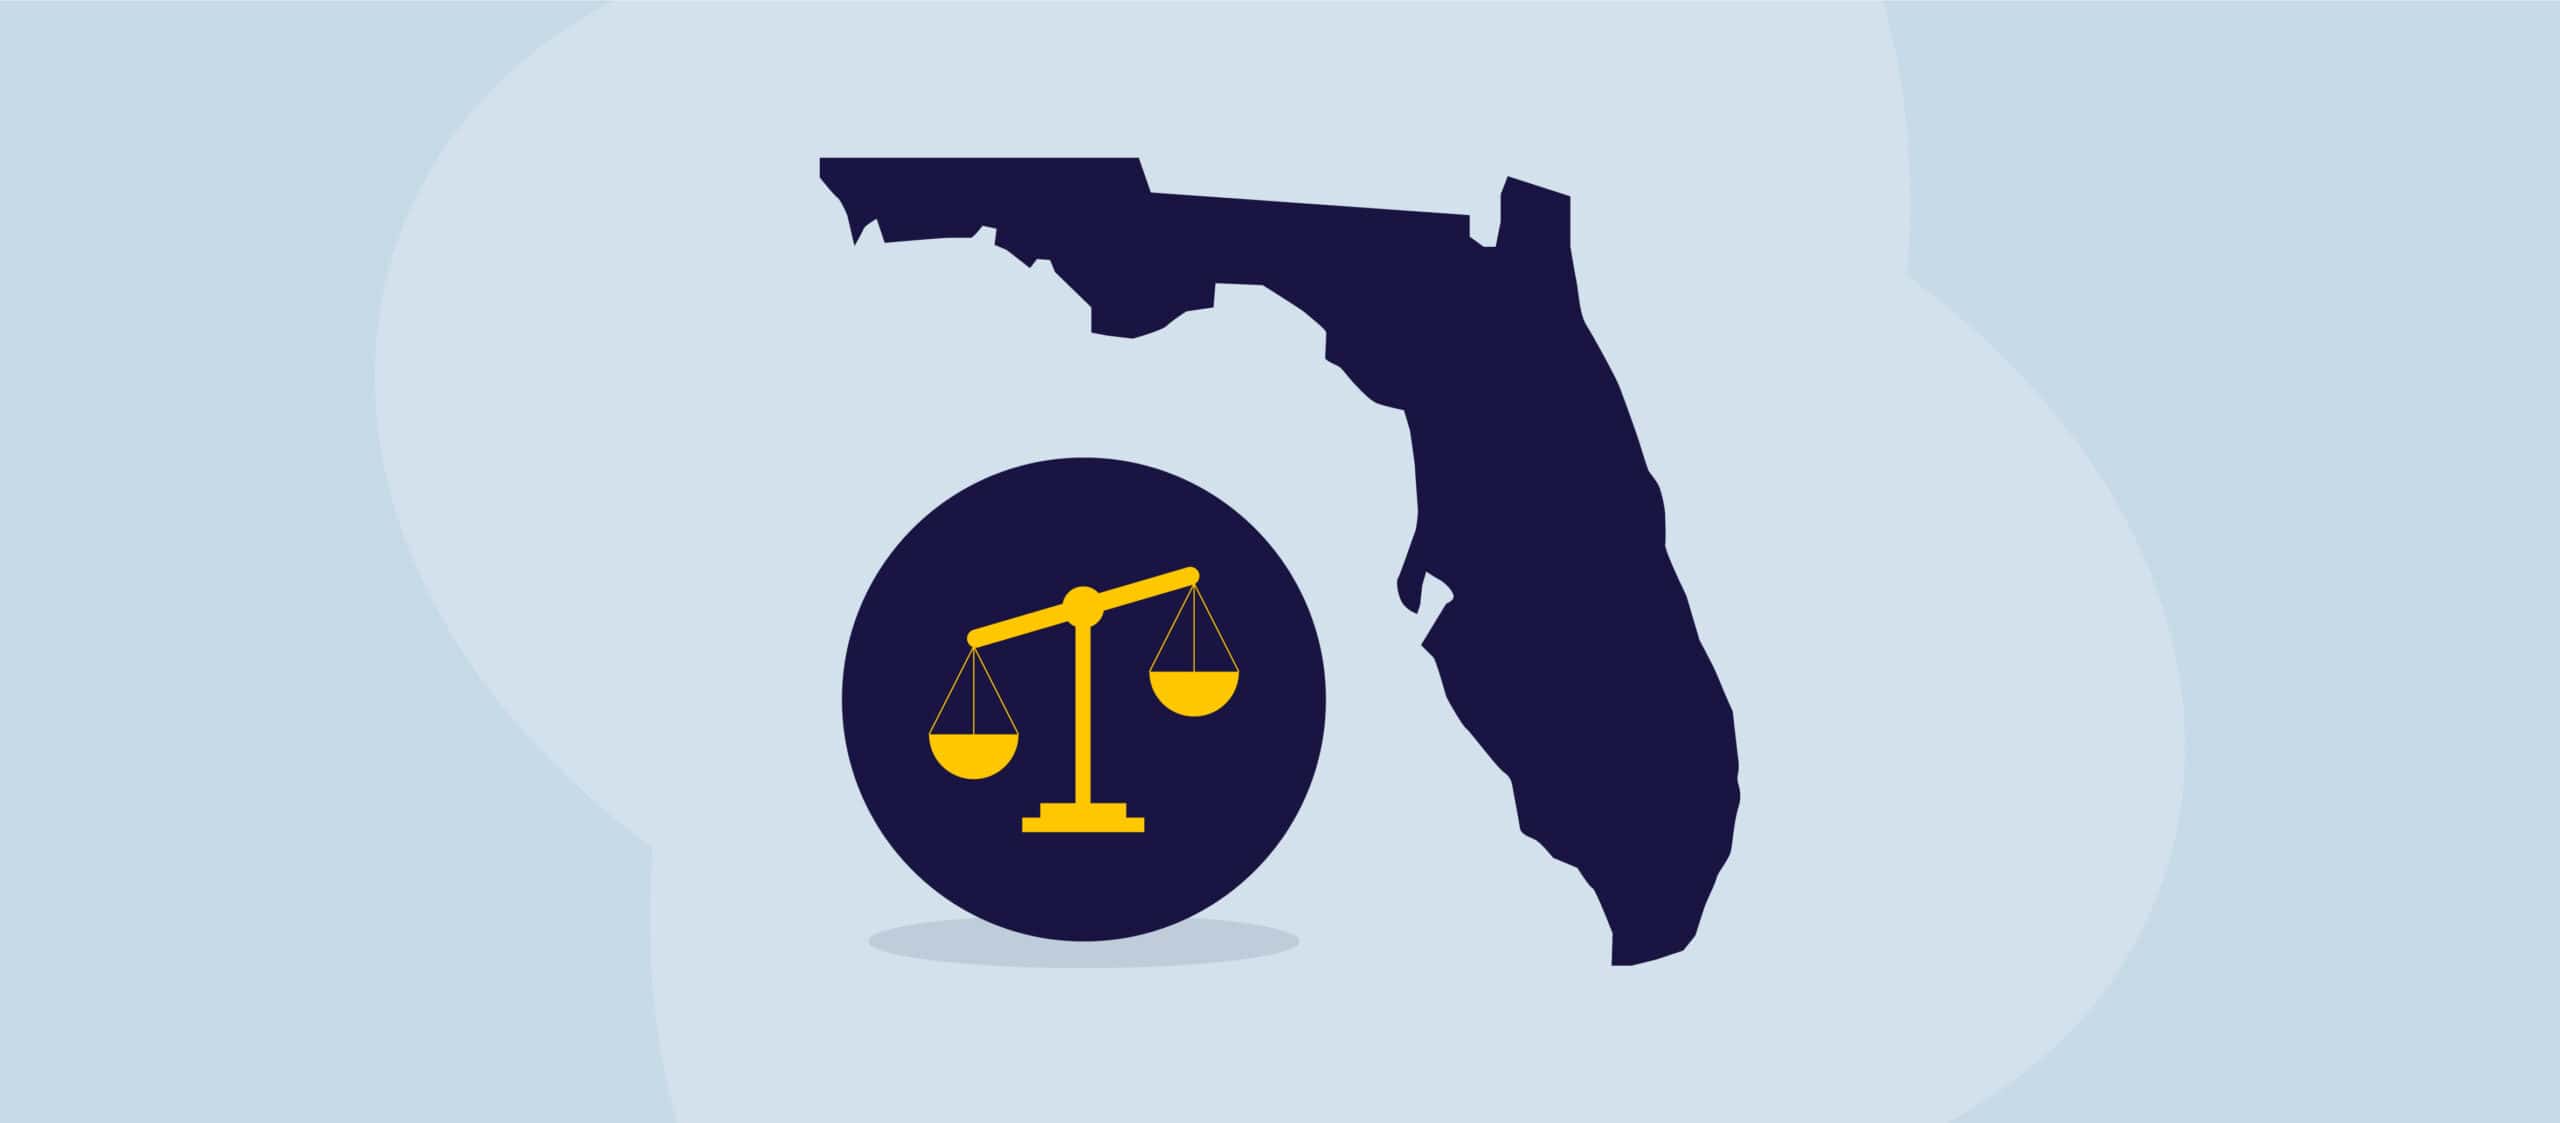 Eine Illustration mit der Waage der Gerechtigkeit und dem Staat Florida.